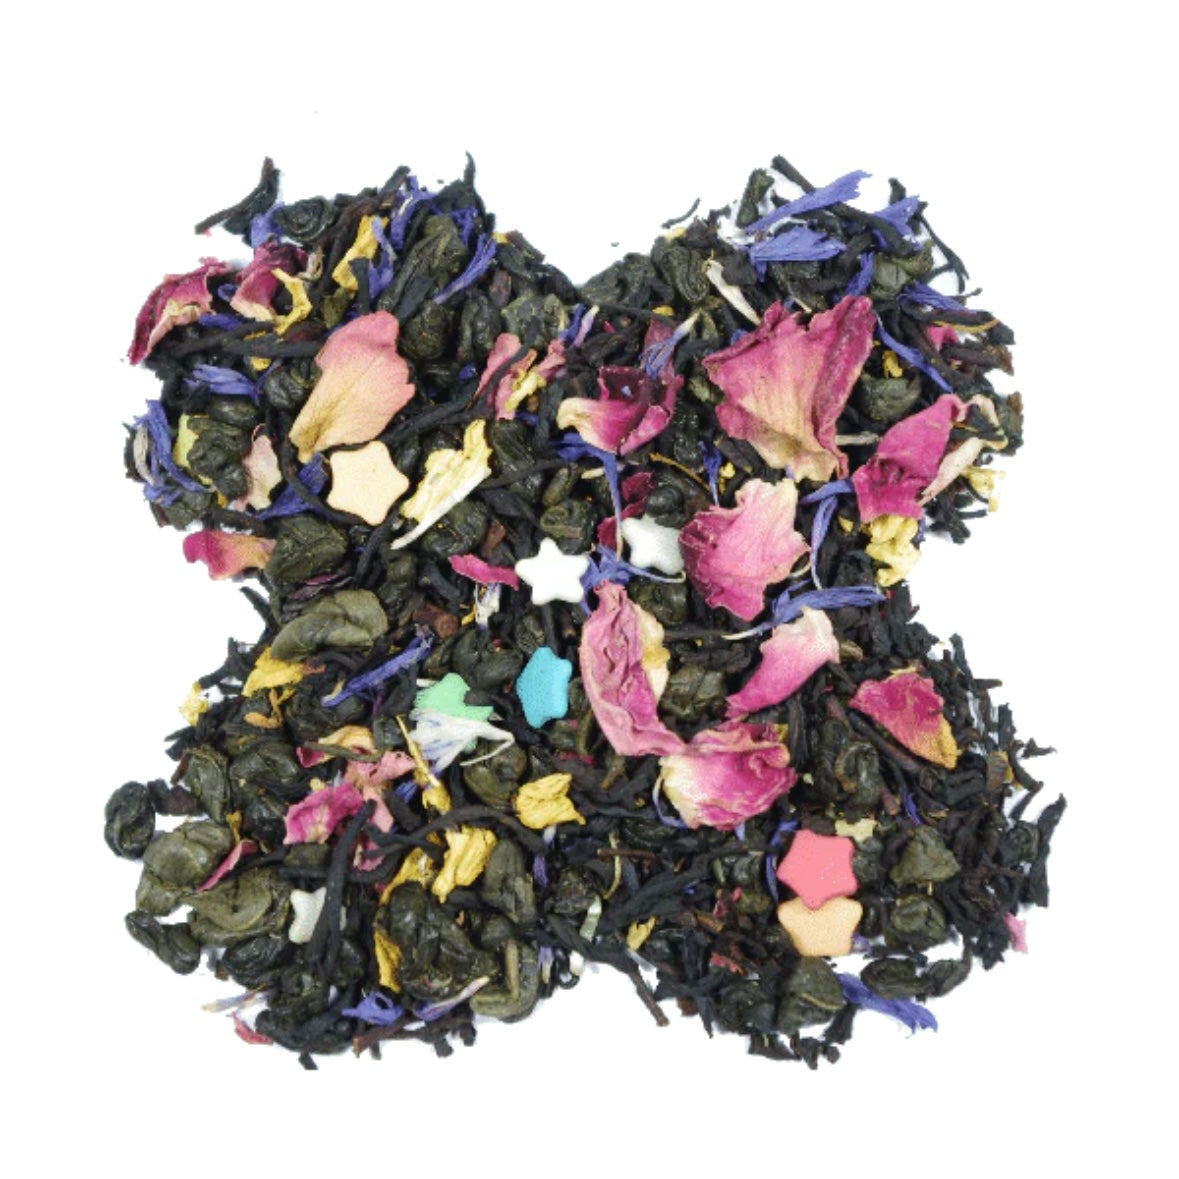 Tè della Fortuna - Miscela di Tè Verde e Tè Nero con petali di fiori e stelline di zucchero Artigianale 100% Organico - 100g